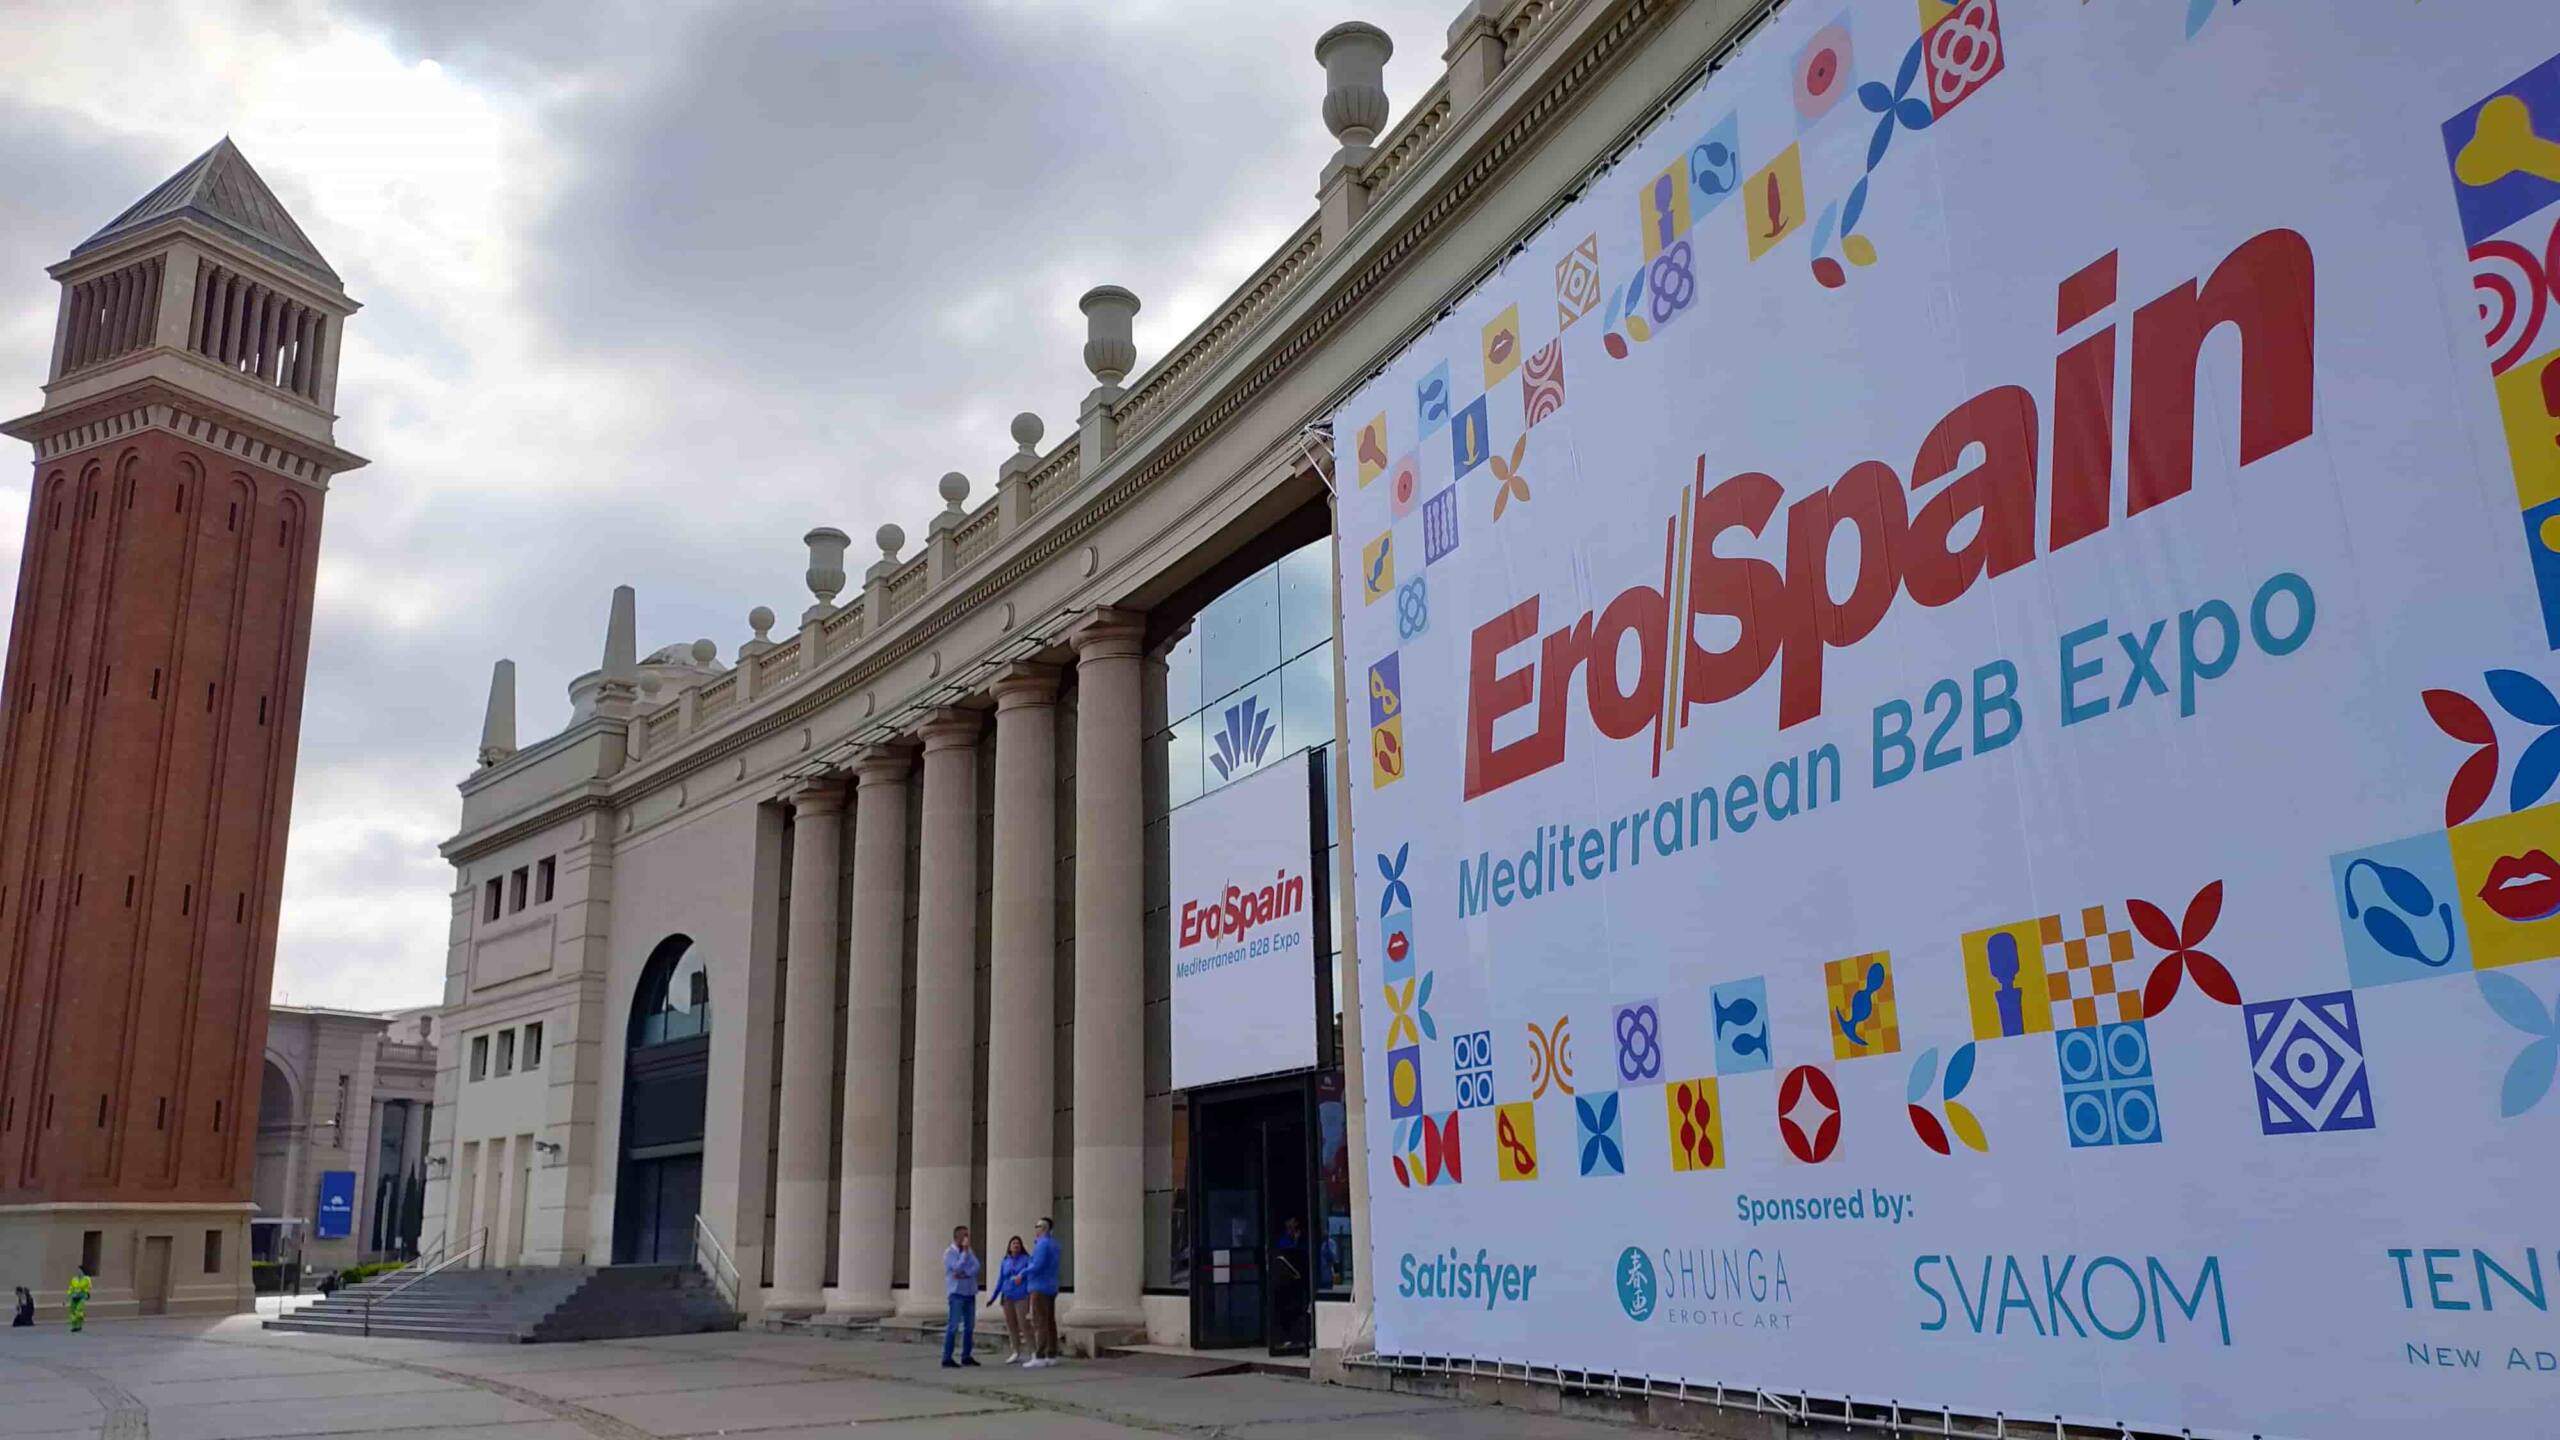 Barcelona acull aquest mes de maig EroSpain, la fira europea més important de la indústria eròtica